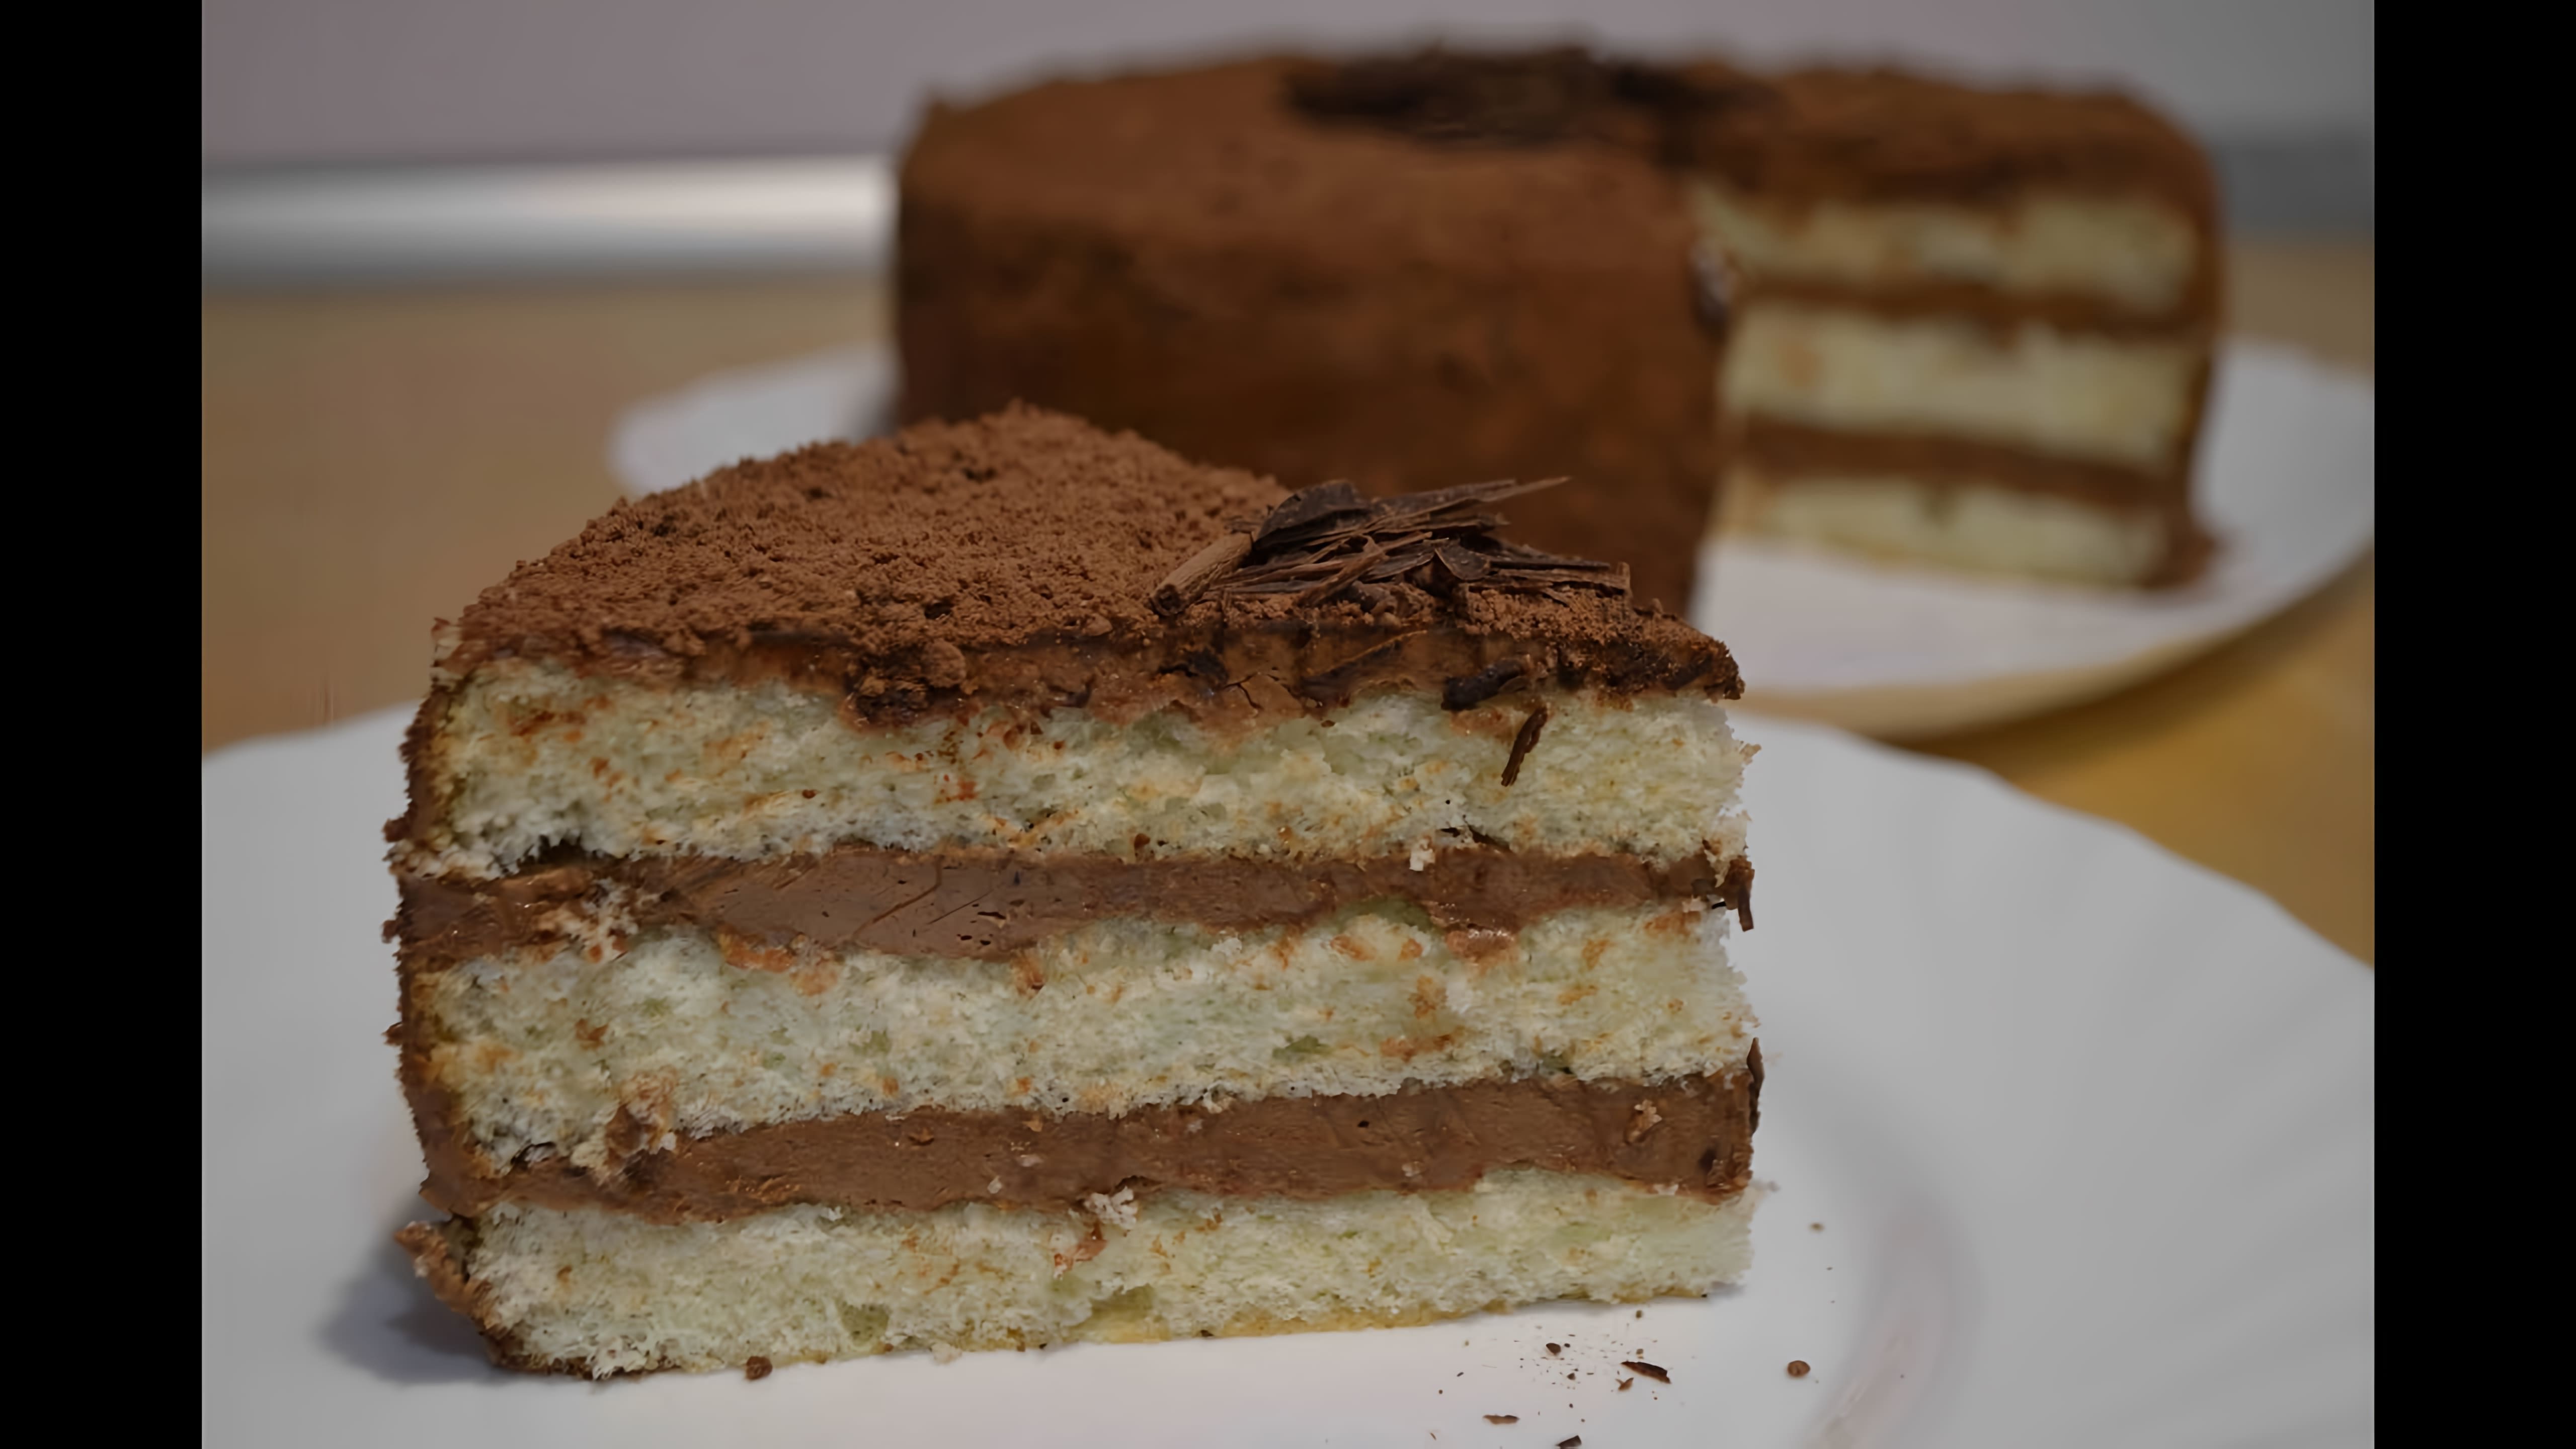 В этом видео демонстрируется рецепт приготовления торта "Трюфель"